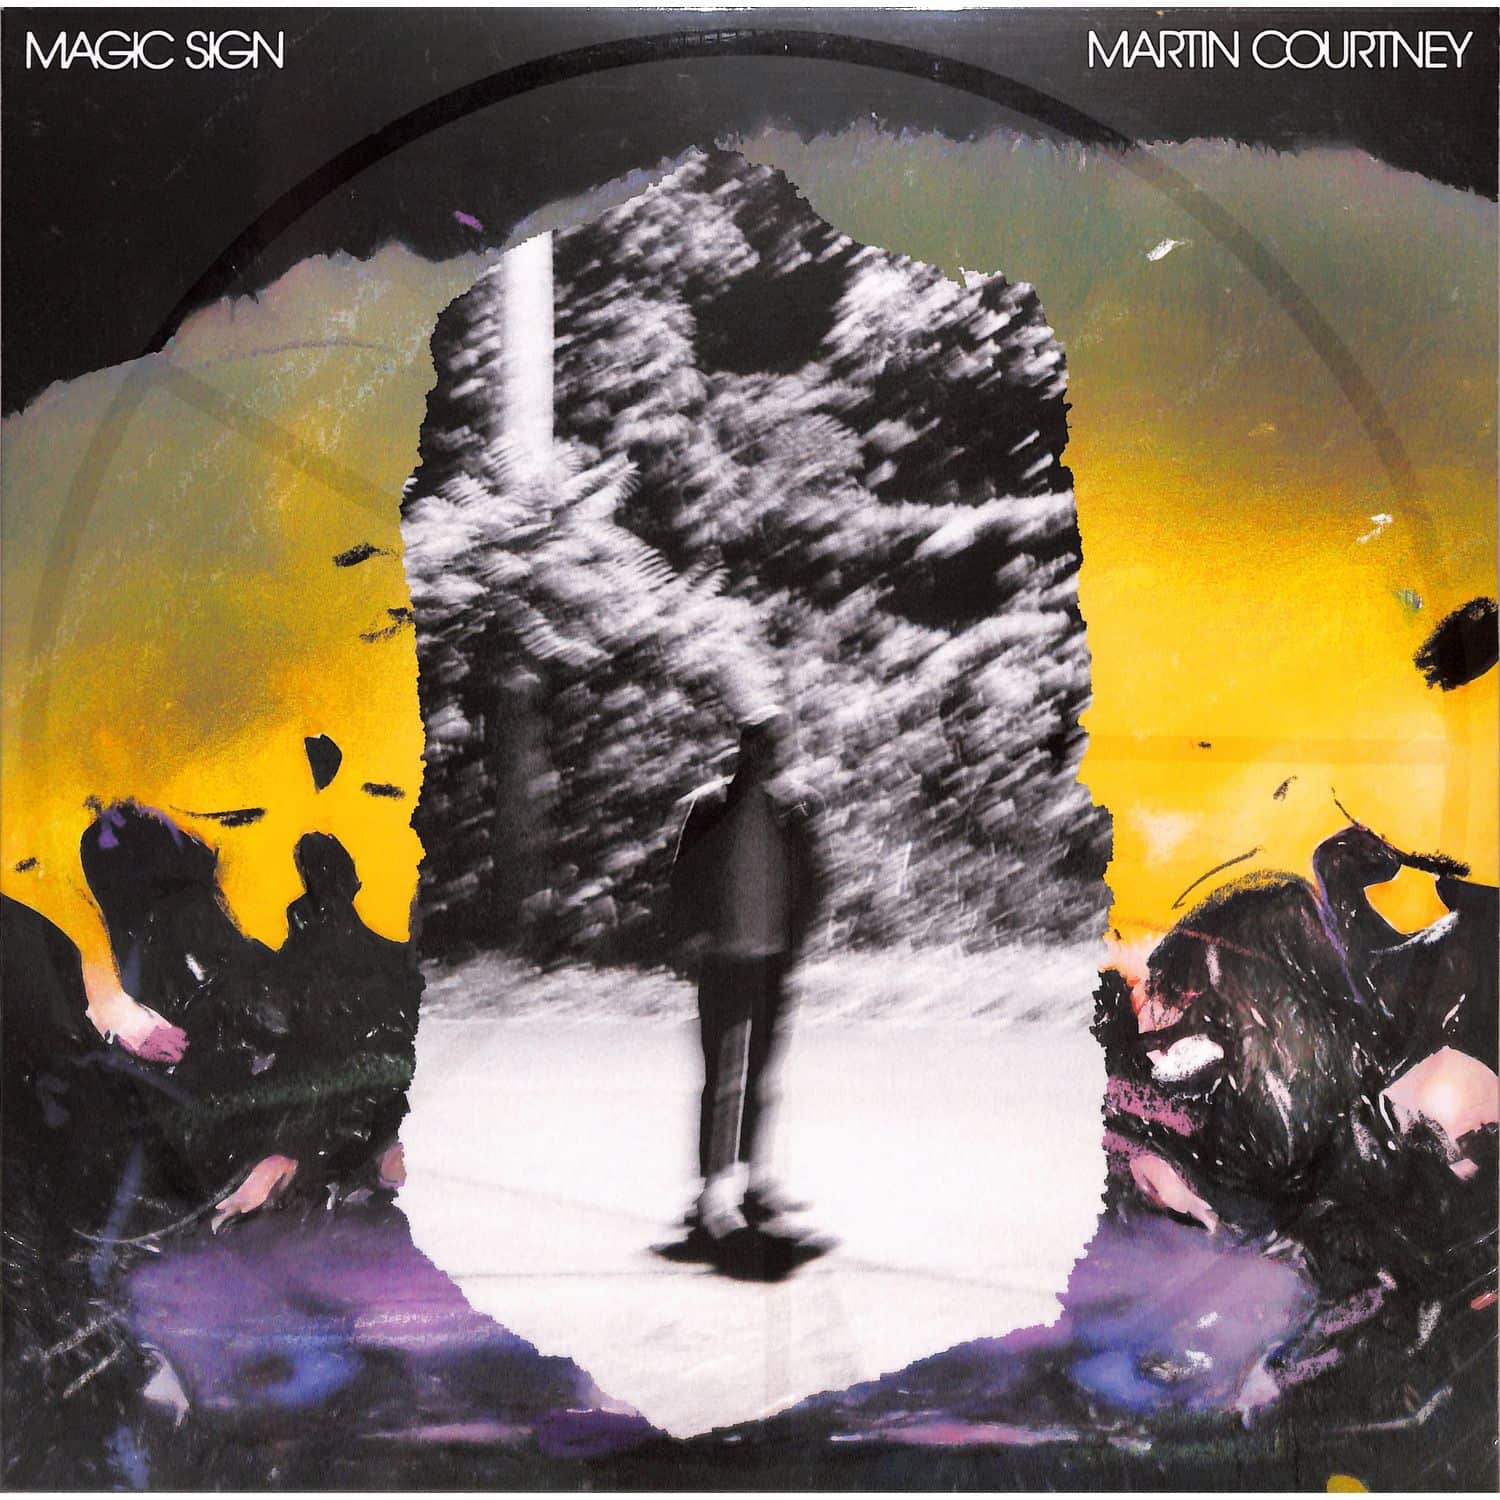 Martin Courtney - MAGIC SIGN 